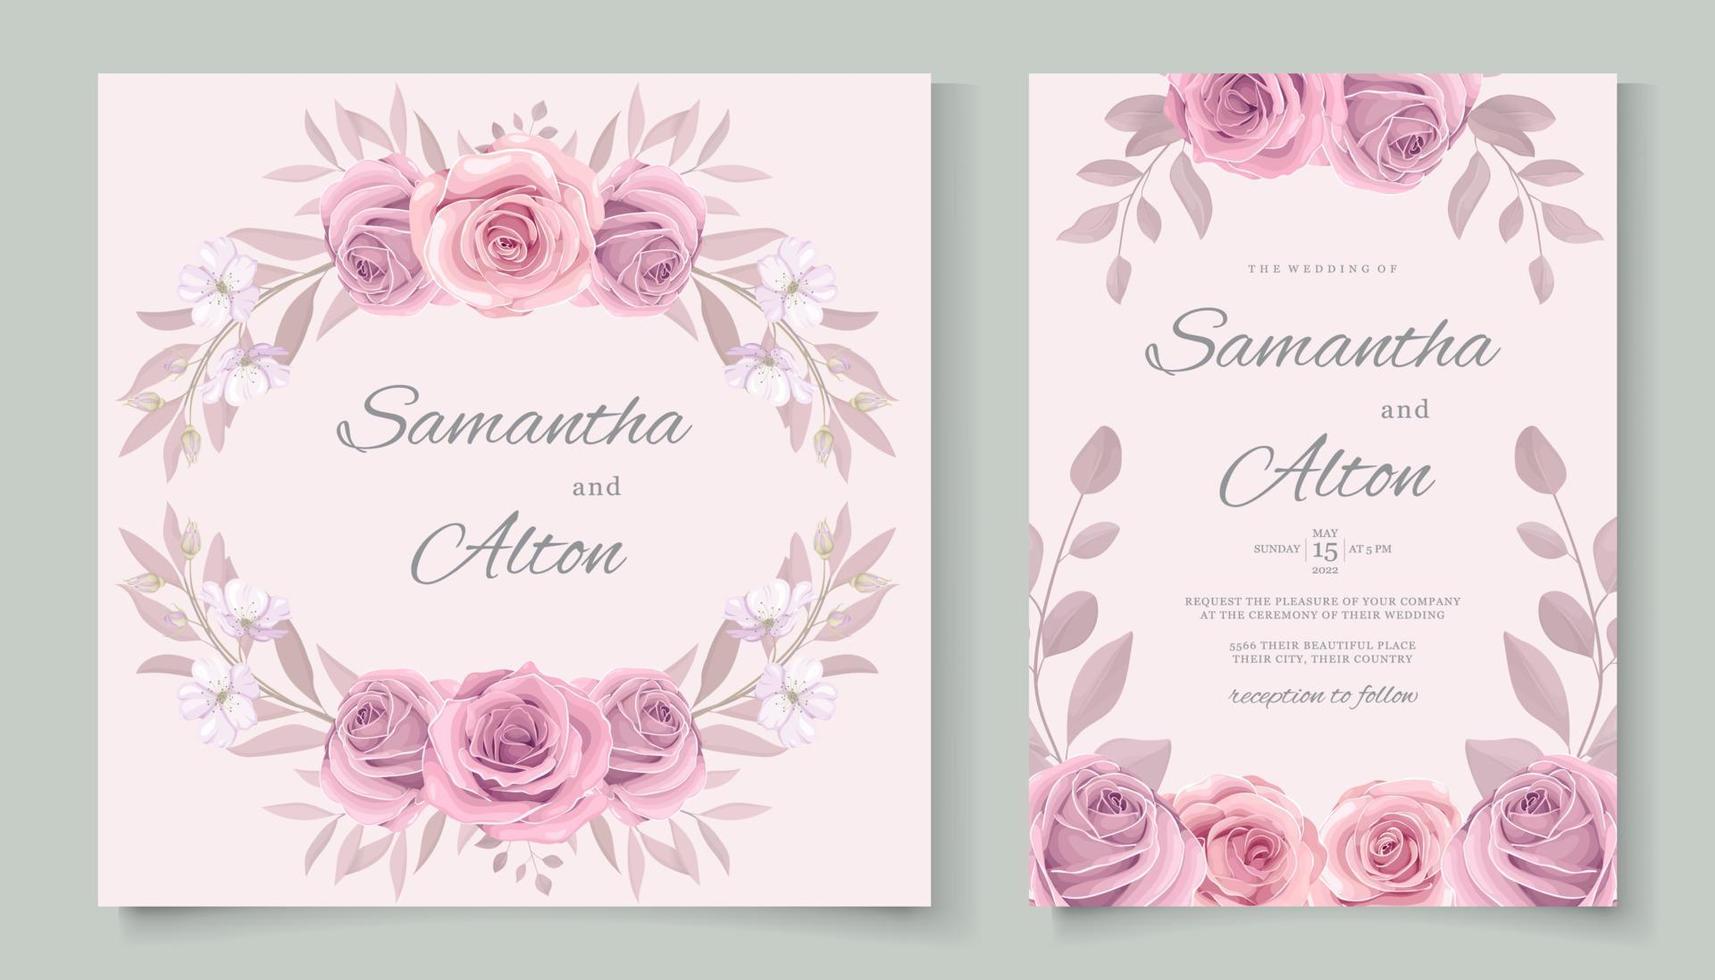 conception de cartes de mariage de fleurs roses en fleurs dessinées à la main vecteur